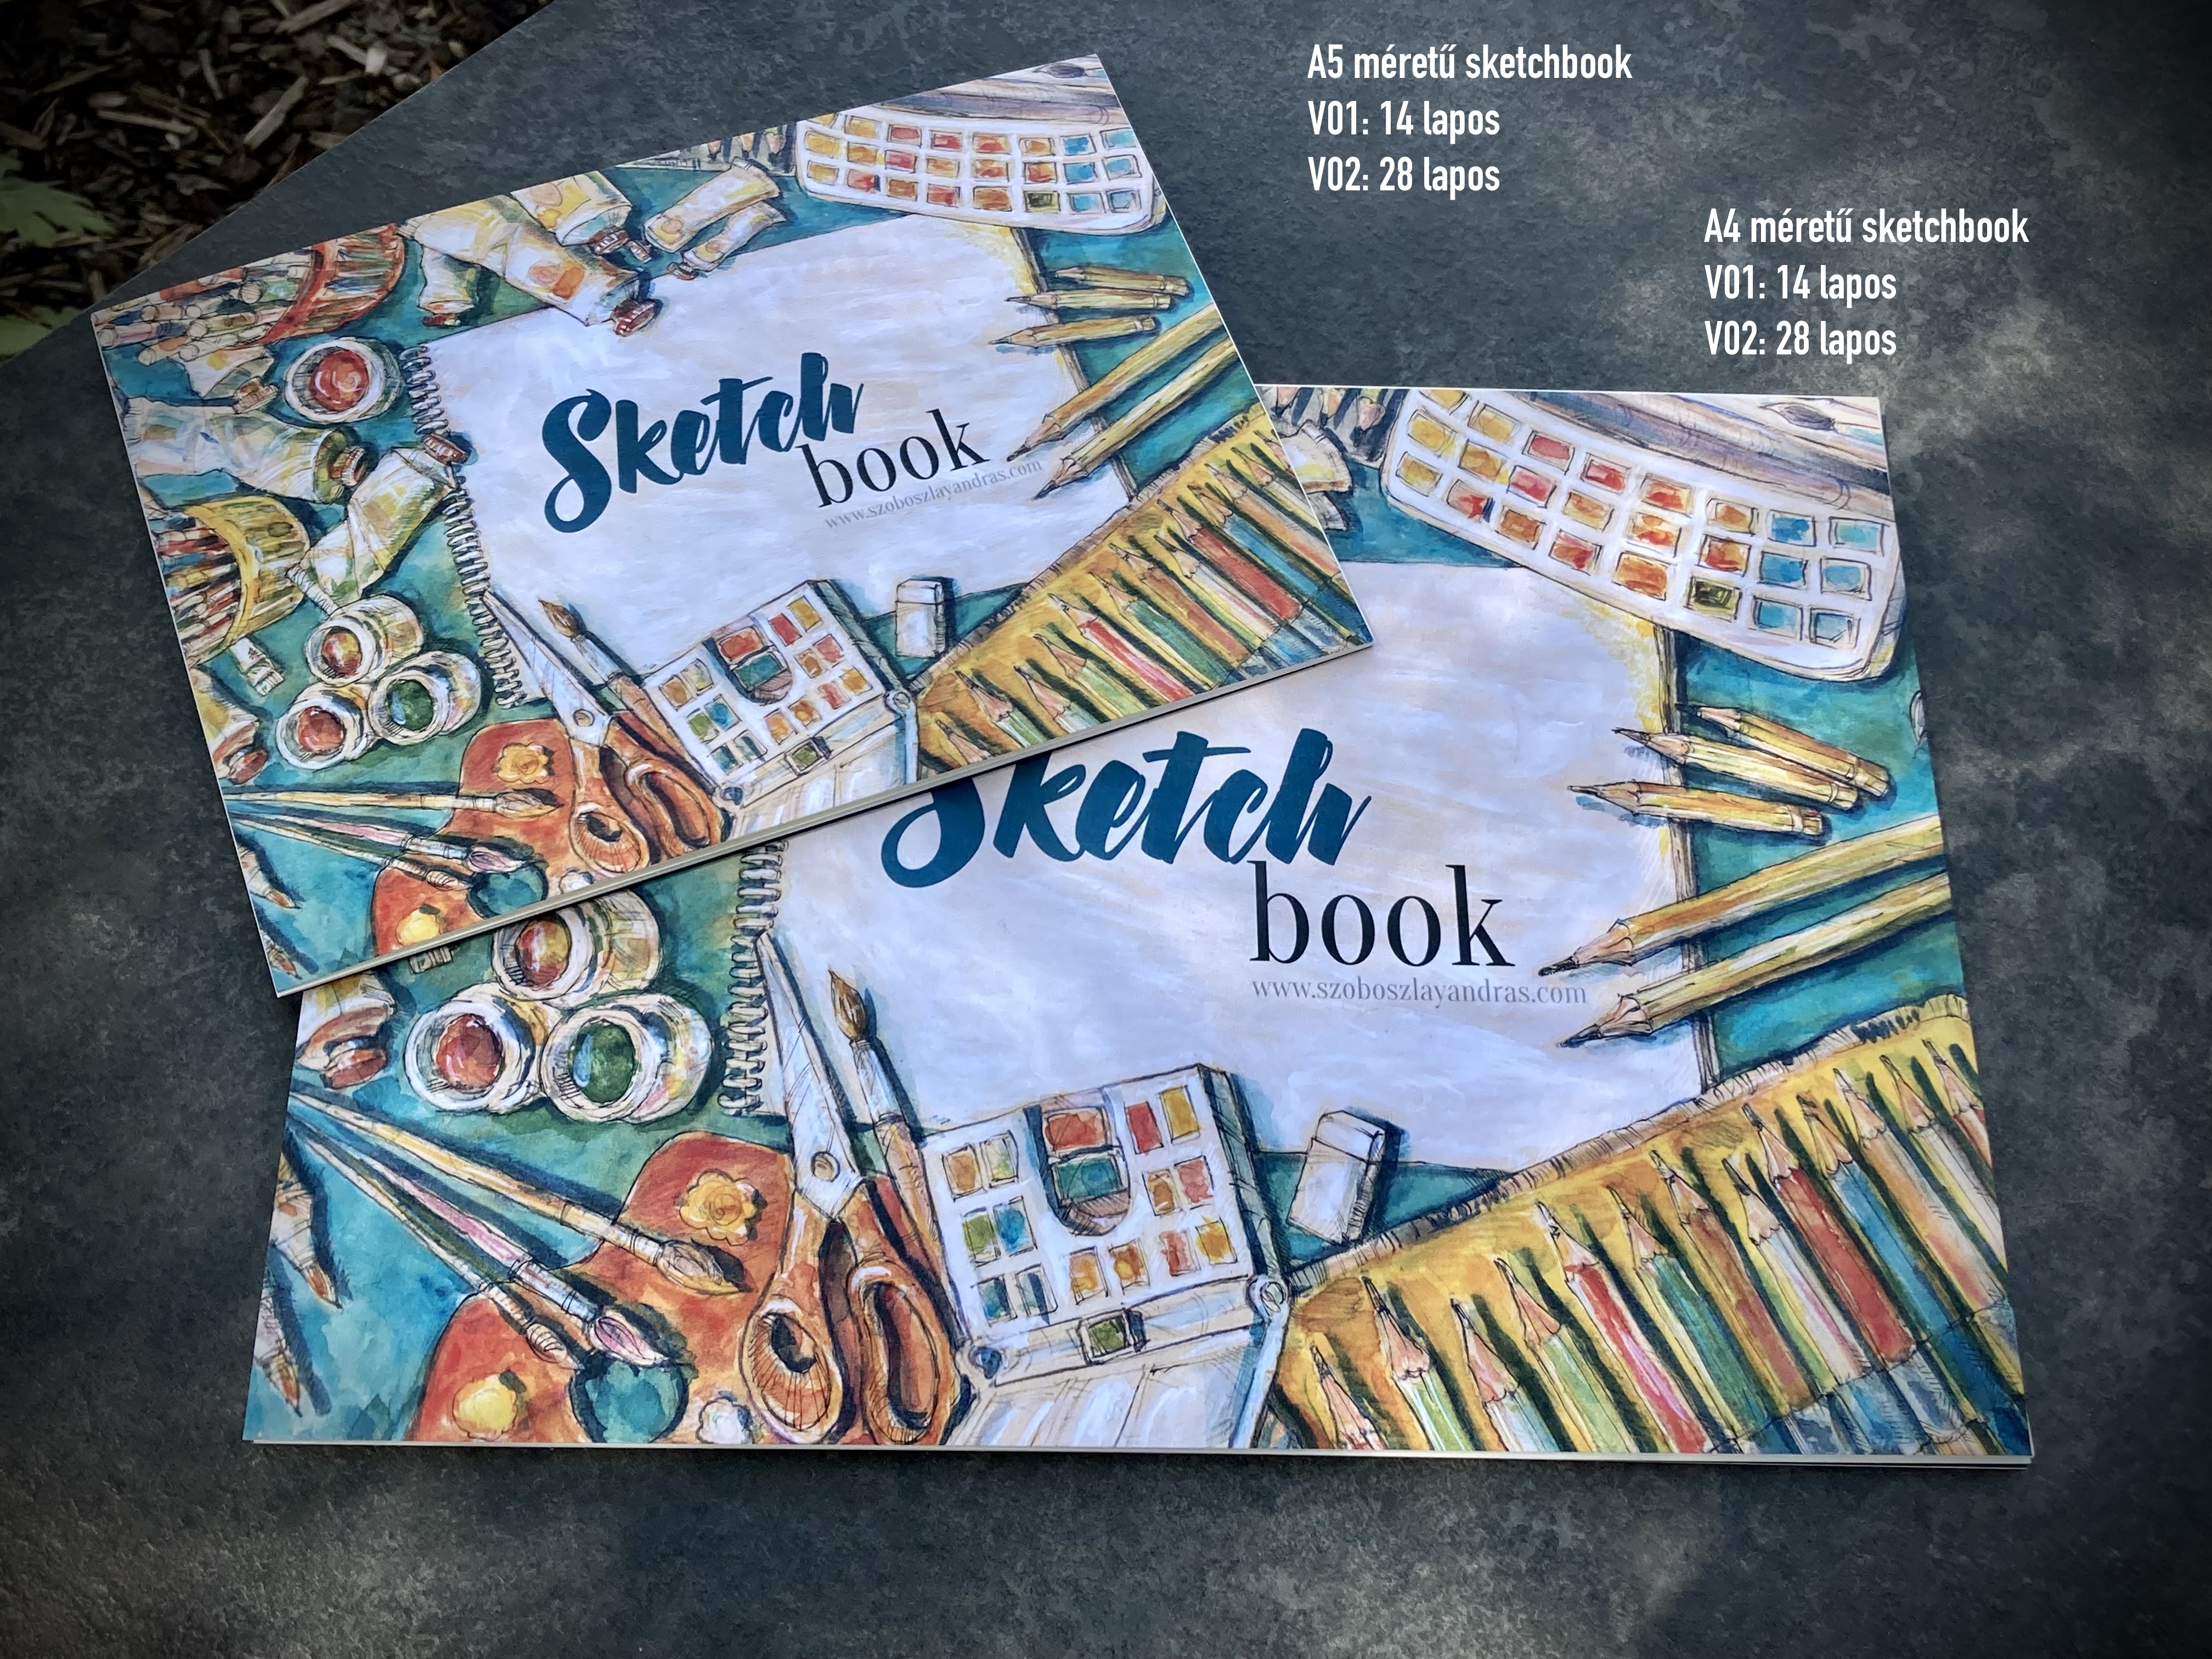 Tematikus sketchbook - a sikeres alkotásért